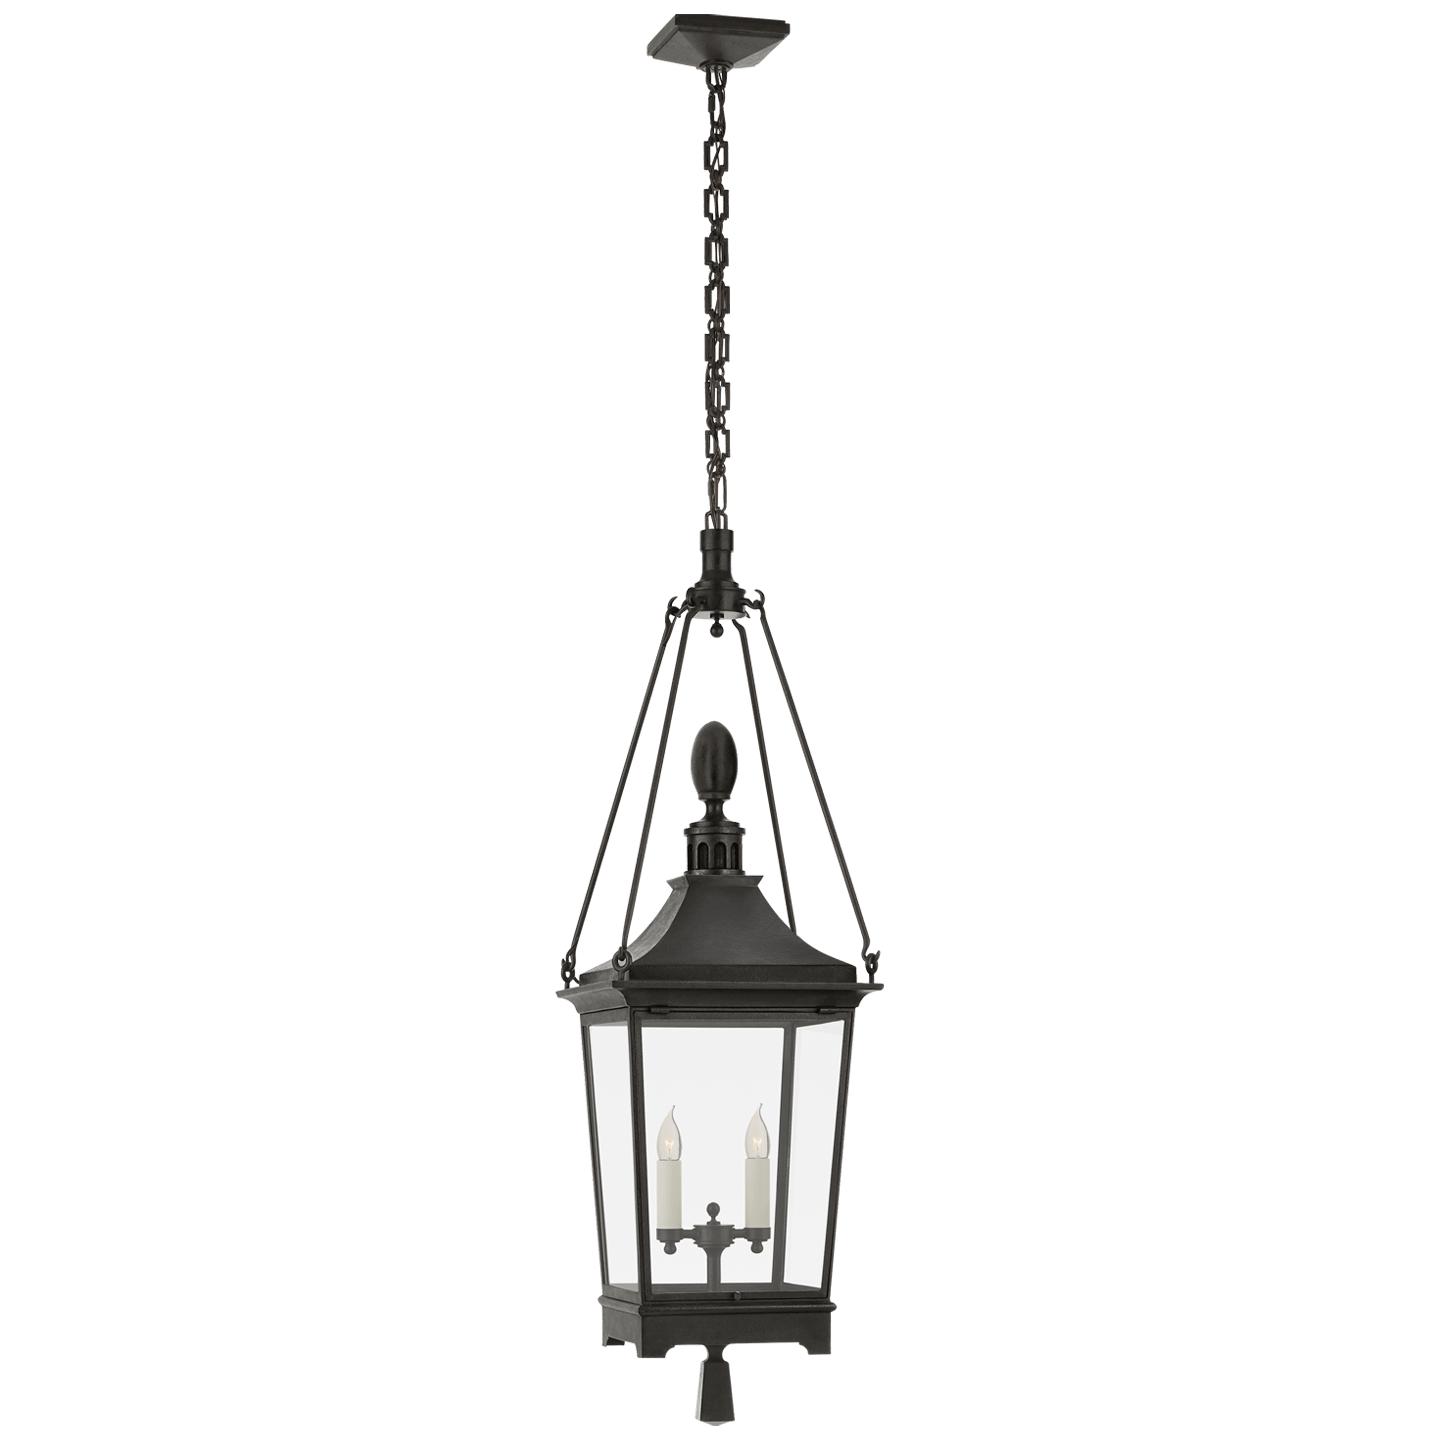 Купить Подвесной светильник Rosedale Classic Medium Hanging Lantern в интернет-магазине roooms.ru